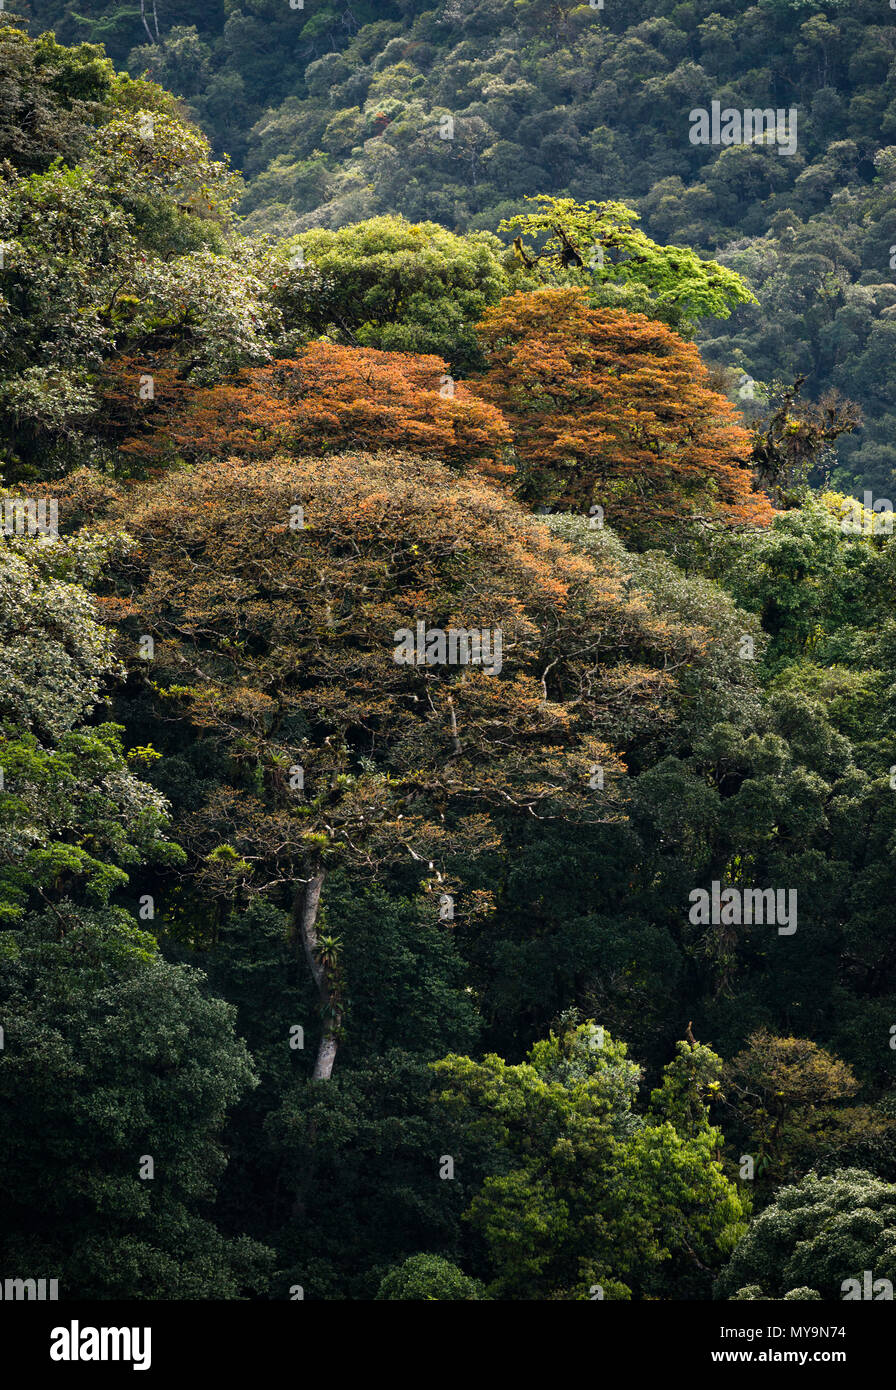 Gros arbres Jatobá (Hymenaea courbaril) avec de nouvelles feuilles colorées, dans les forêts tropicales de l'Atlantique de se le Brésil. Banque D'Images